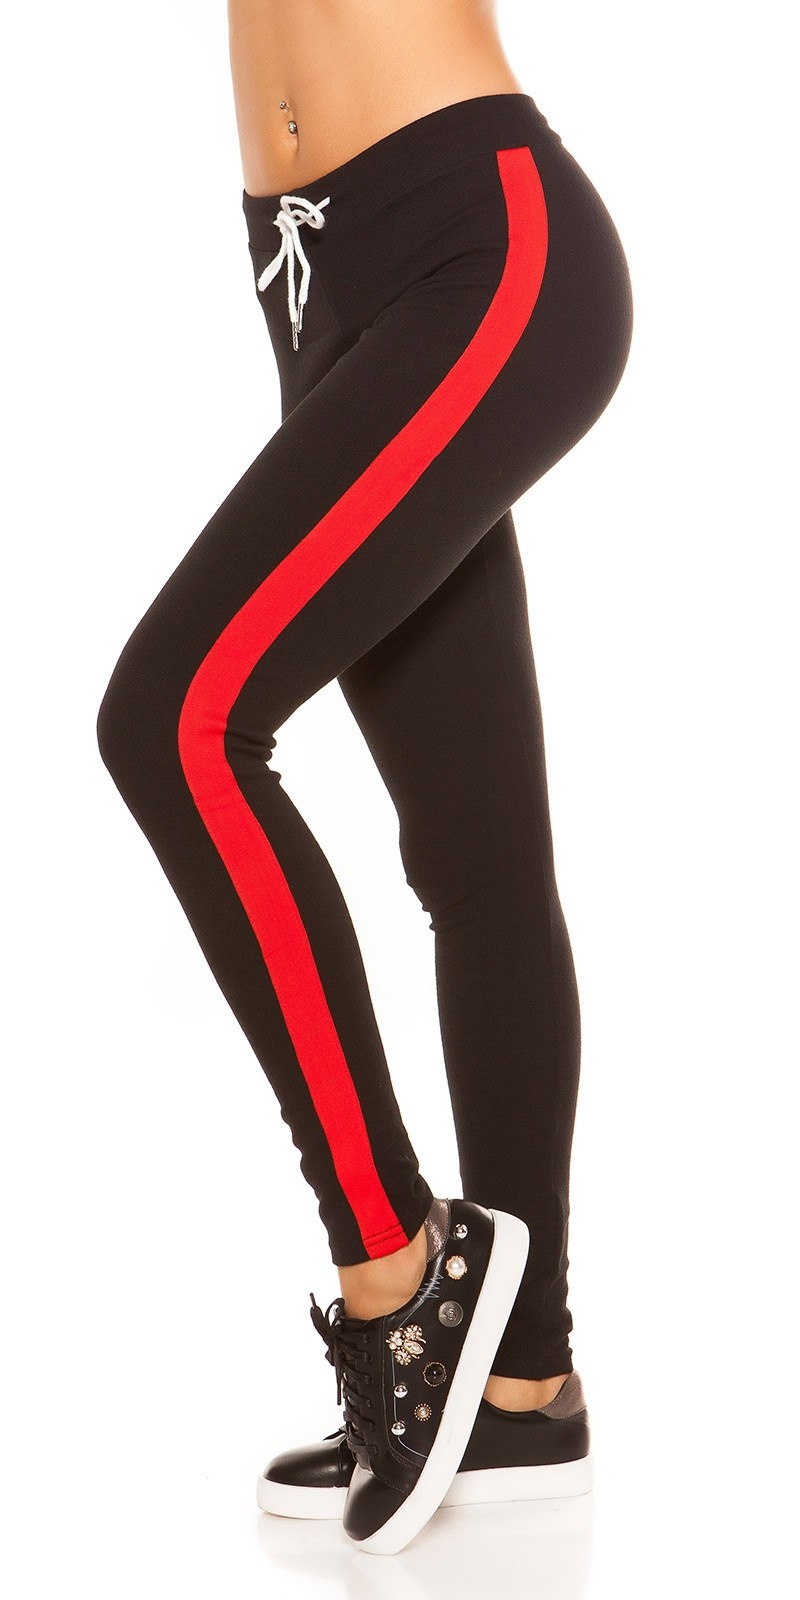 Trendy joggingbroek met contrast strepen, zwart rood